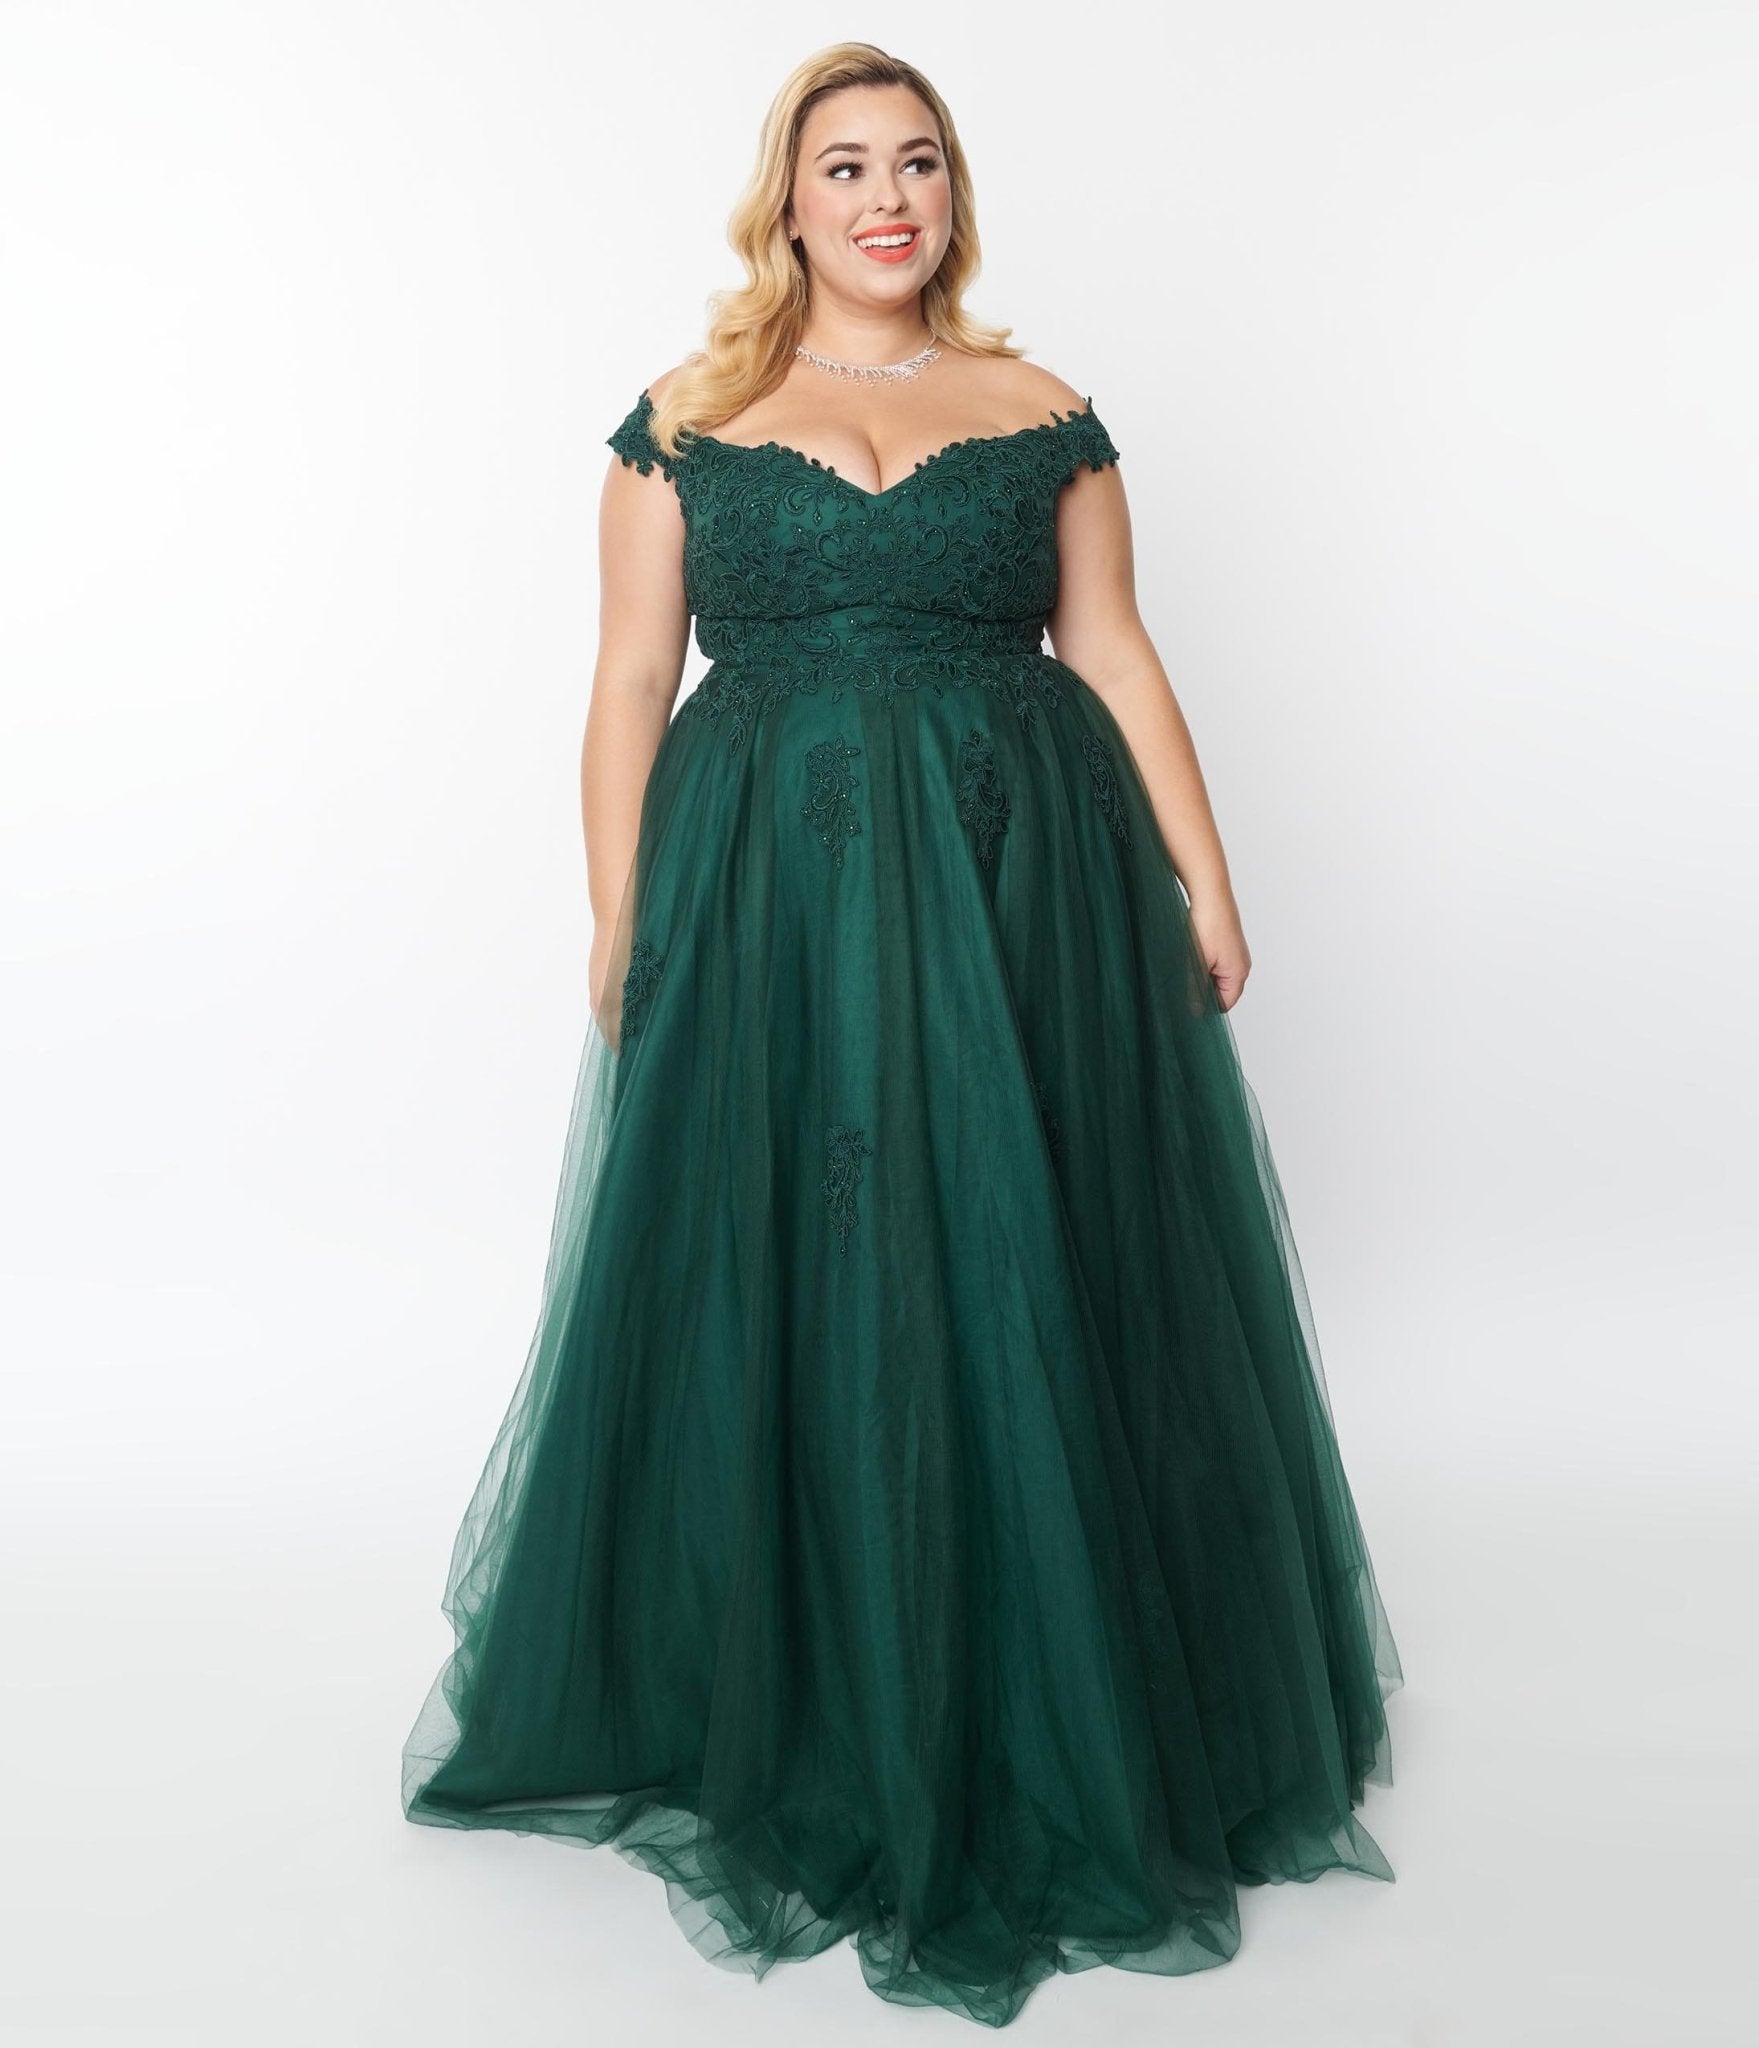 bespoke 1950s dresses – The Vintage Dressmaker